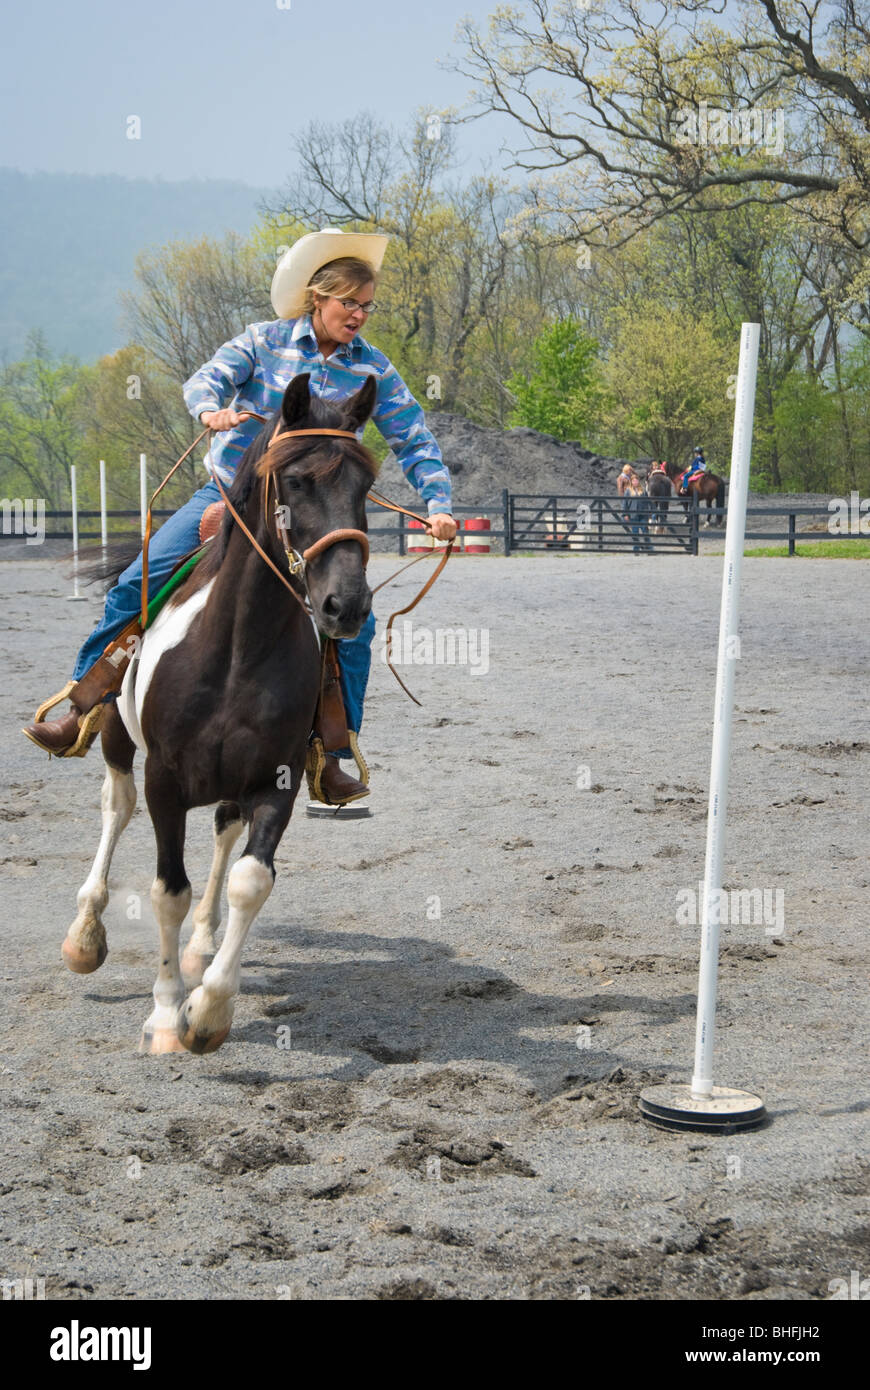 Imagen del Jinete sobre un caballo de pintura pasando por los polacos durante una competición. Foto de stock